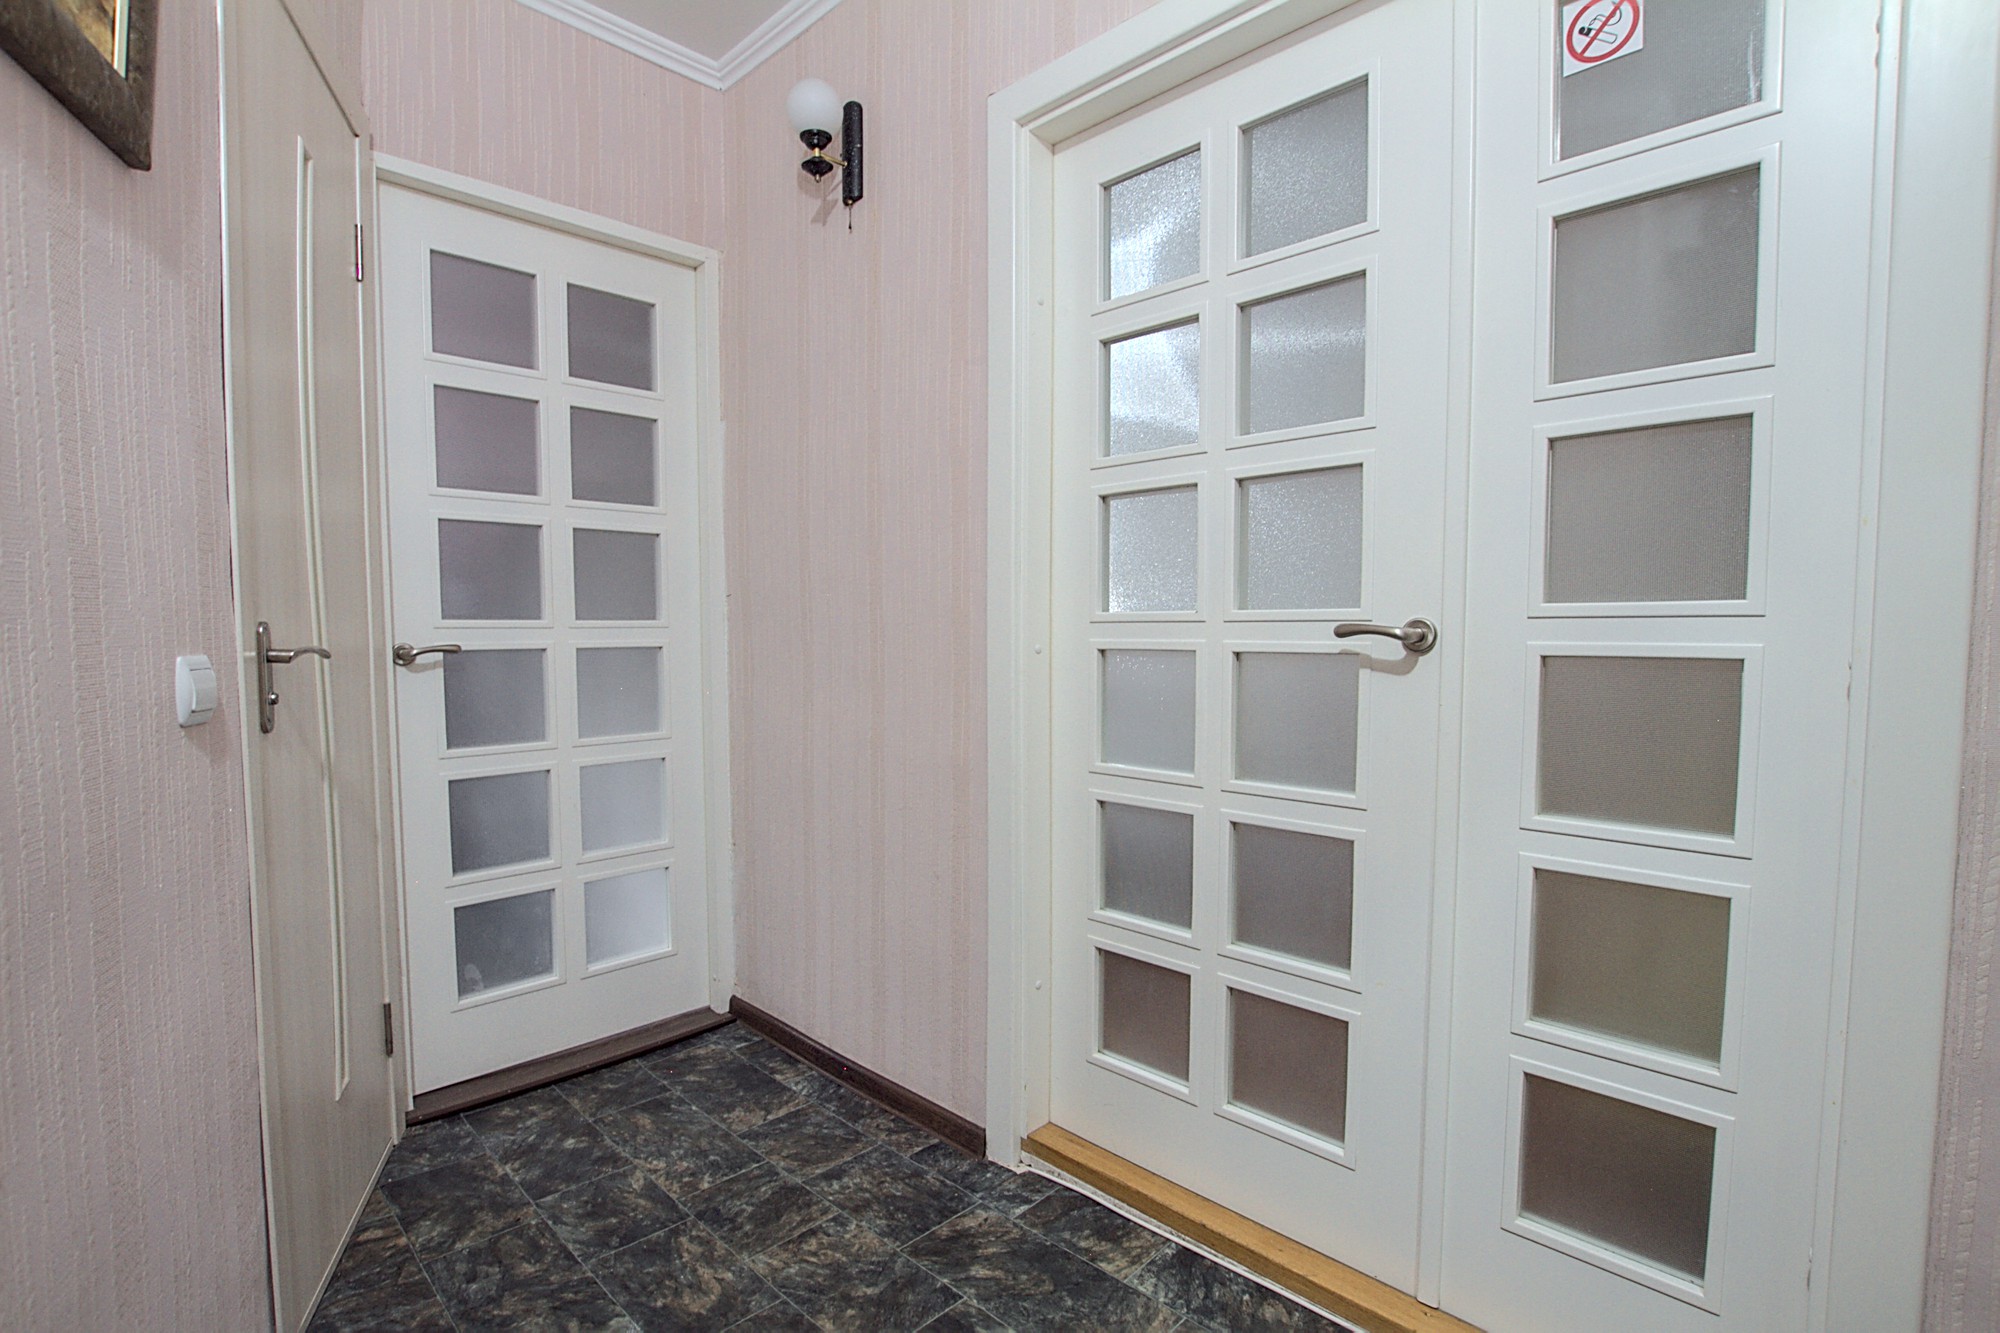 Studio economico in affitto nel centro di Chisinau: 1 stanza, 1 camera da letto, 35 m²